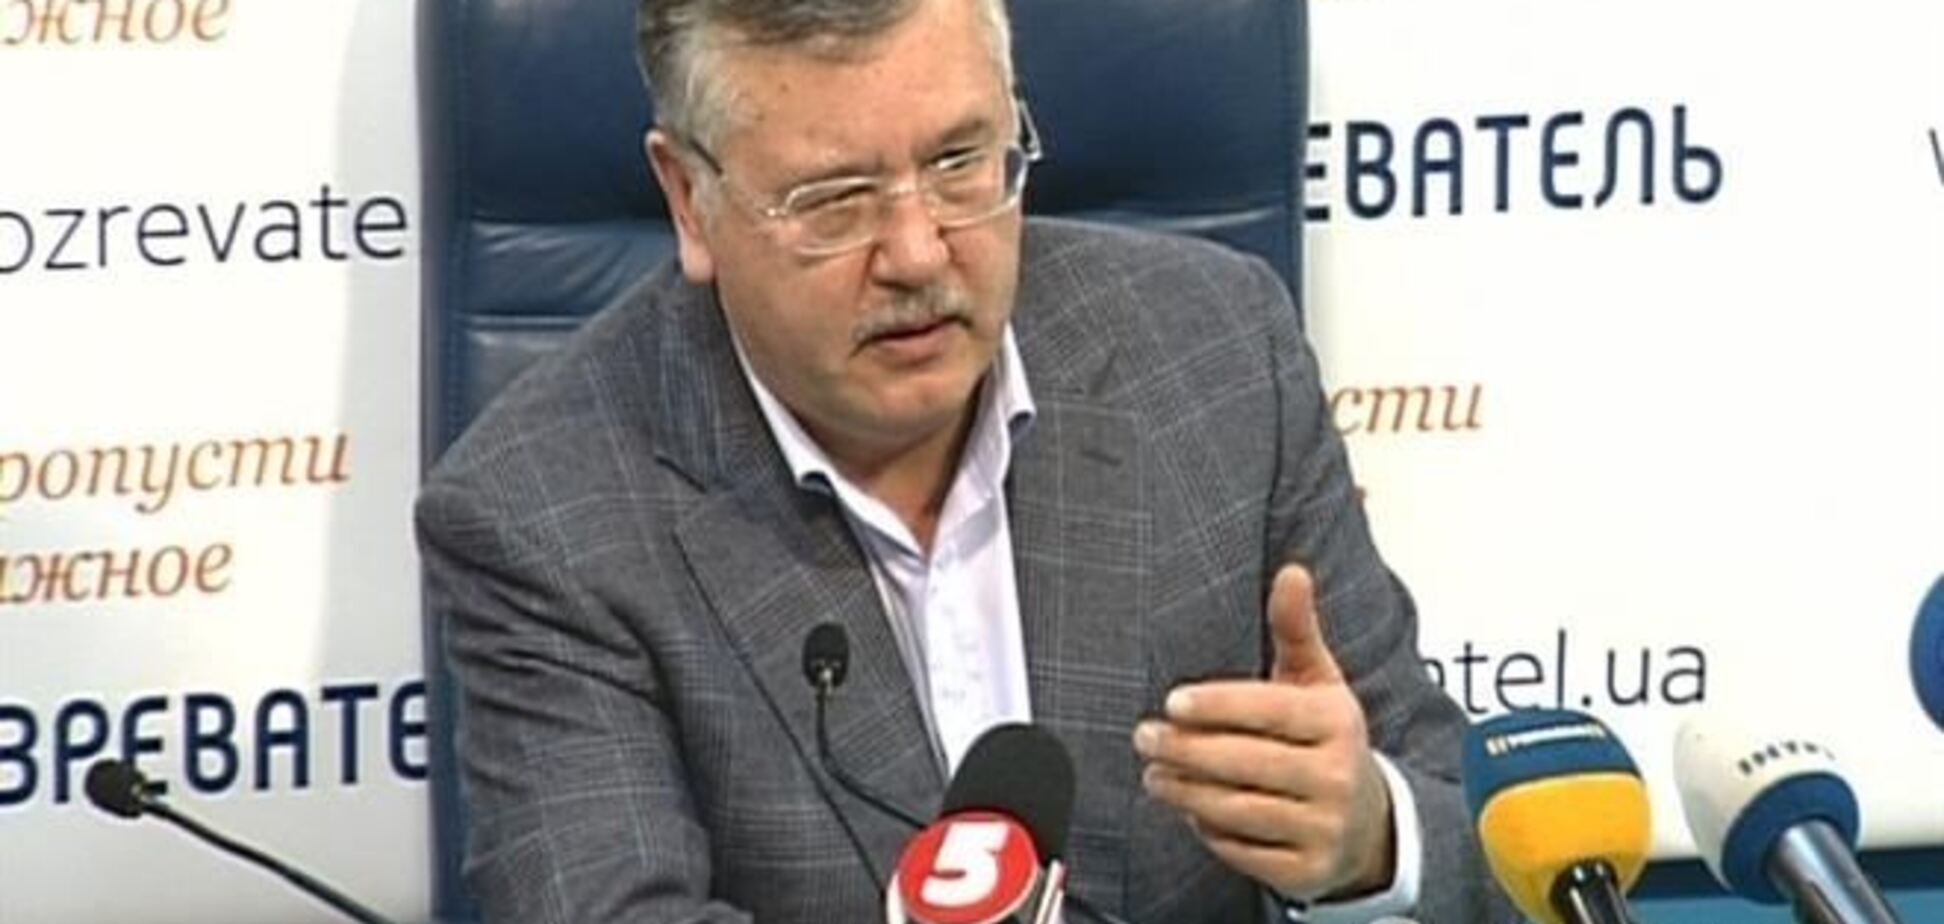 Гриценко закликав пікетувати посольства країн Євросоюзу